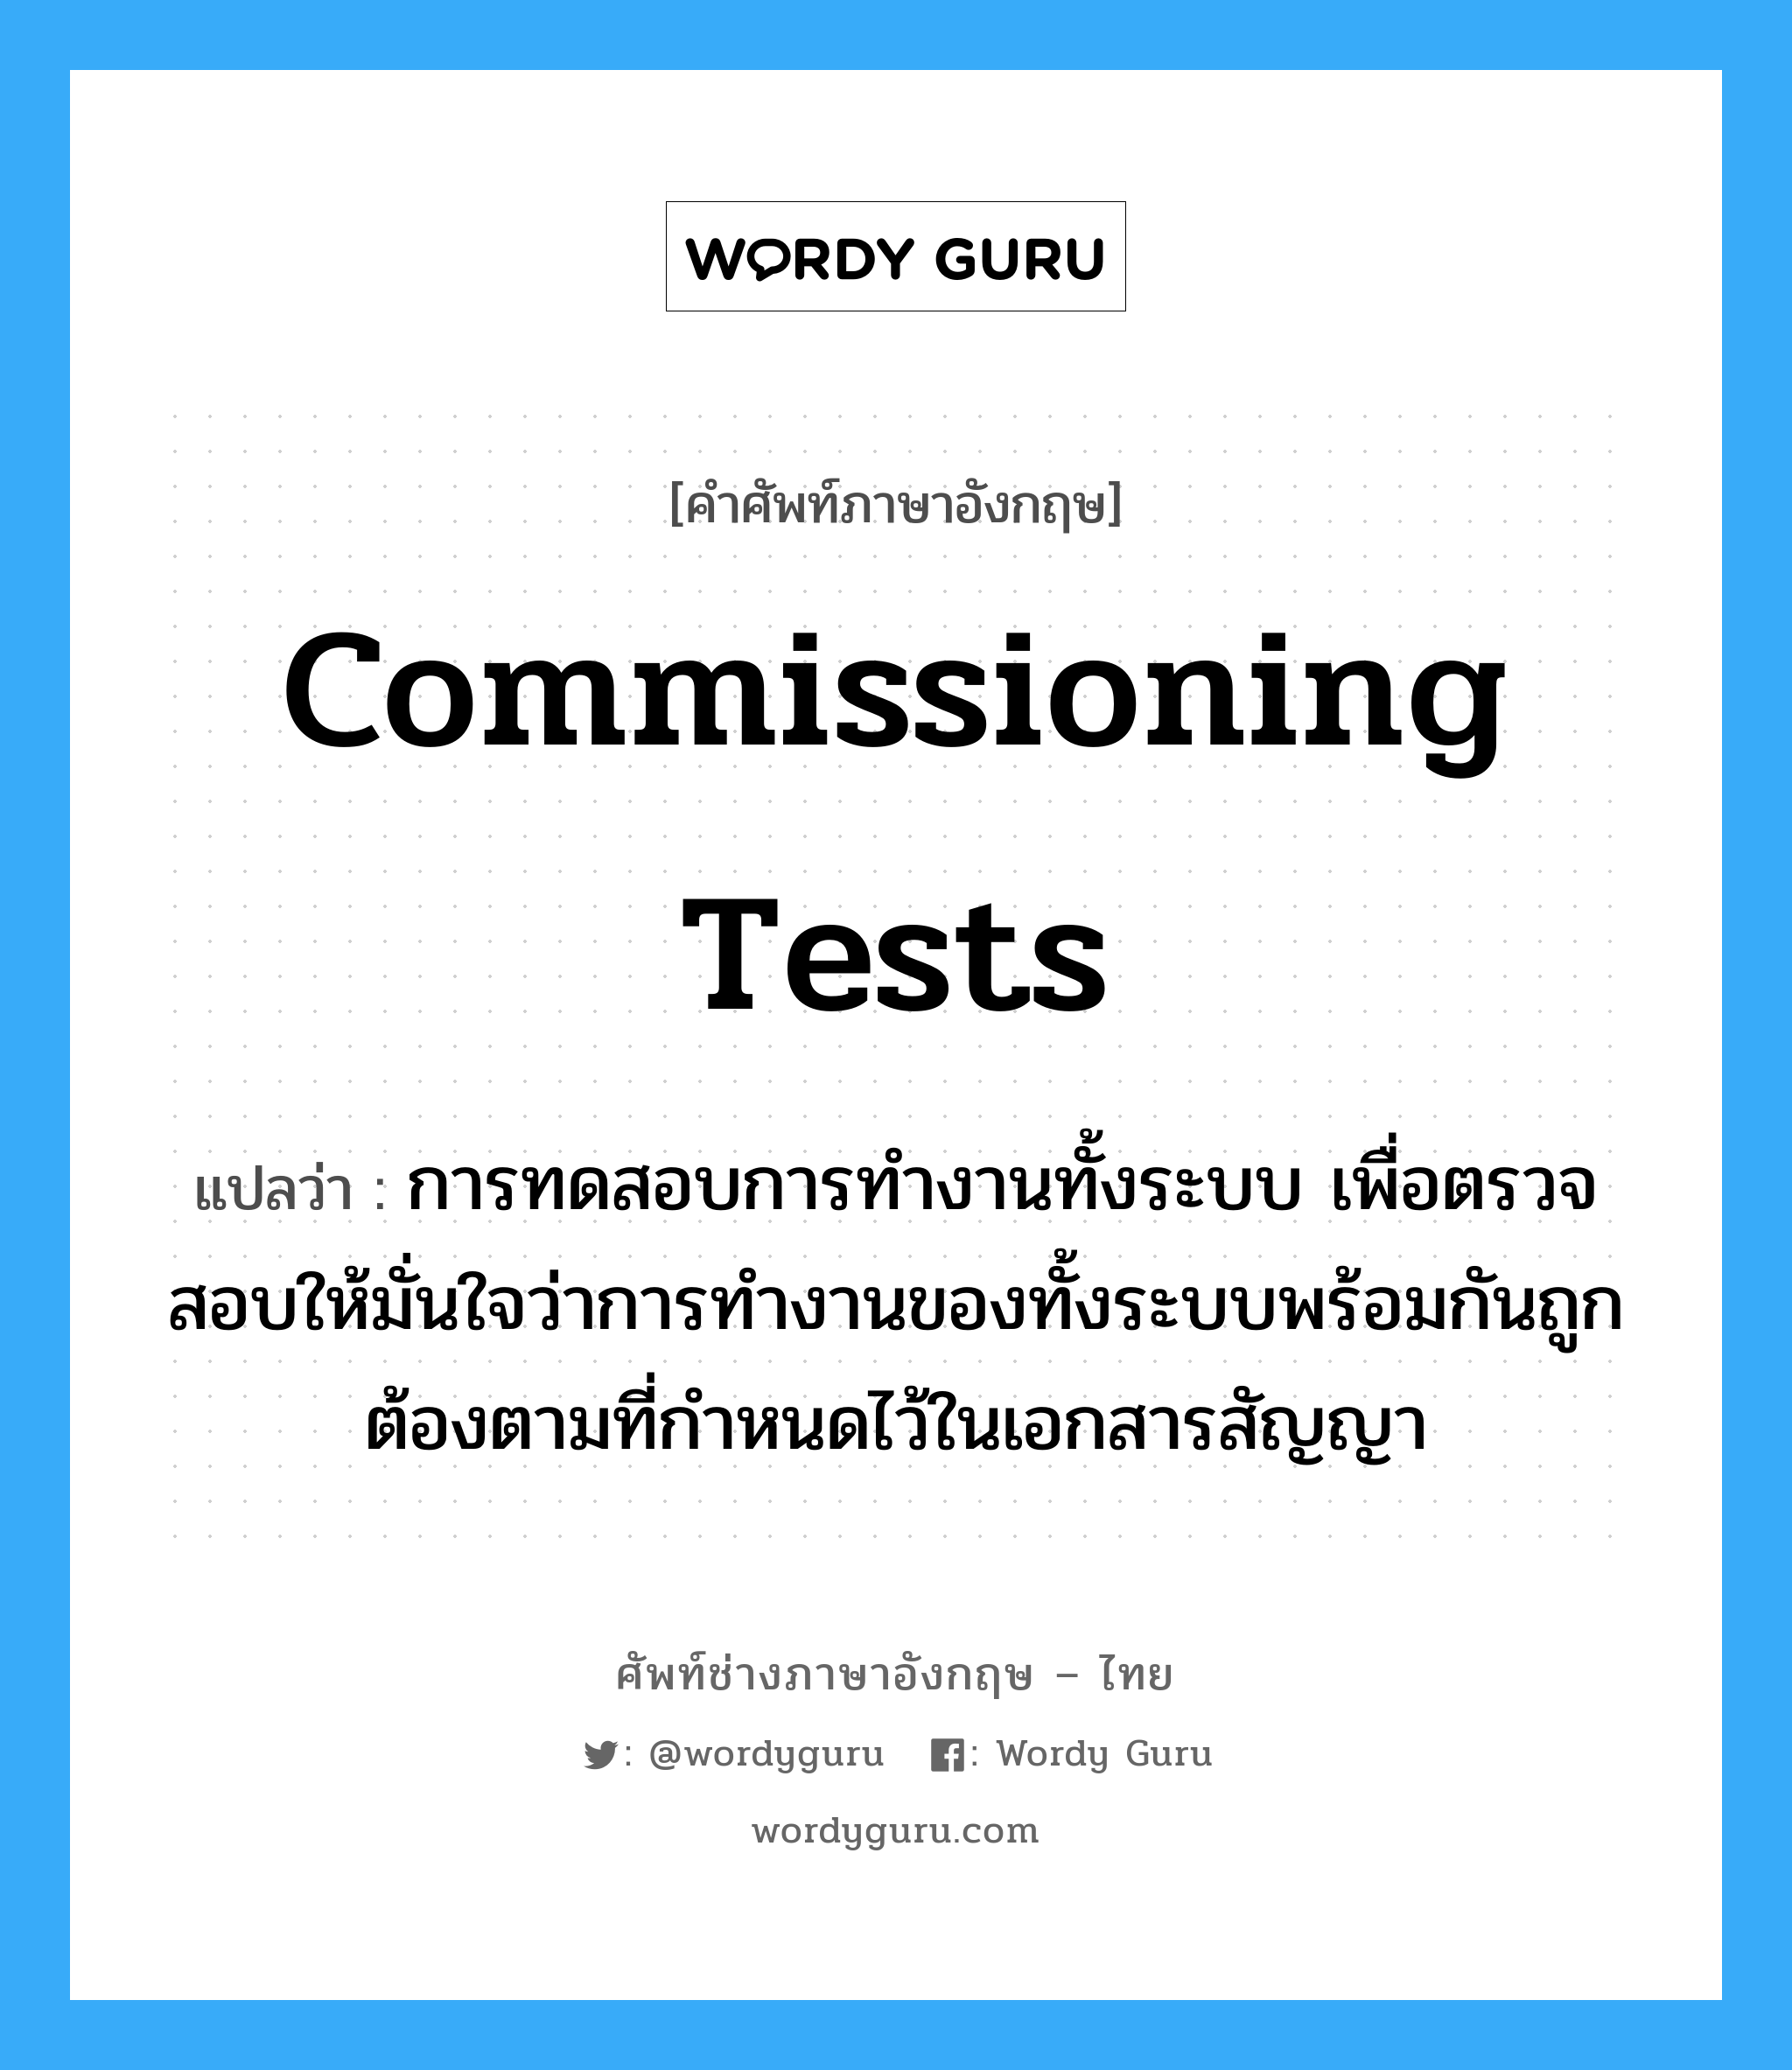 Commissioning Tests แปลว่า?, คำศัพท์ช่างภาษาอังกฤษ - ไทย Commissioning Tests คำศัพท์ภาษาอังกฤษ Commissioning Tests แปลว่า การทดสอบการทำงานทั้งระบบ เพื่อตรวจสอบให้มั่นใจว่าการทำงานของทั้งระบบพร้อมกันถูกต้องตามที่กำหนดไว้ในเอกสารสัญญา